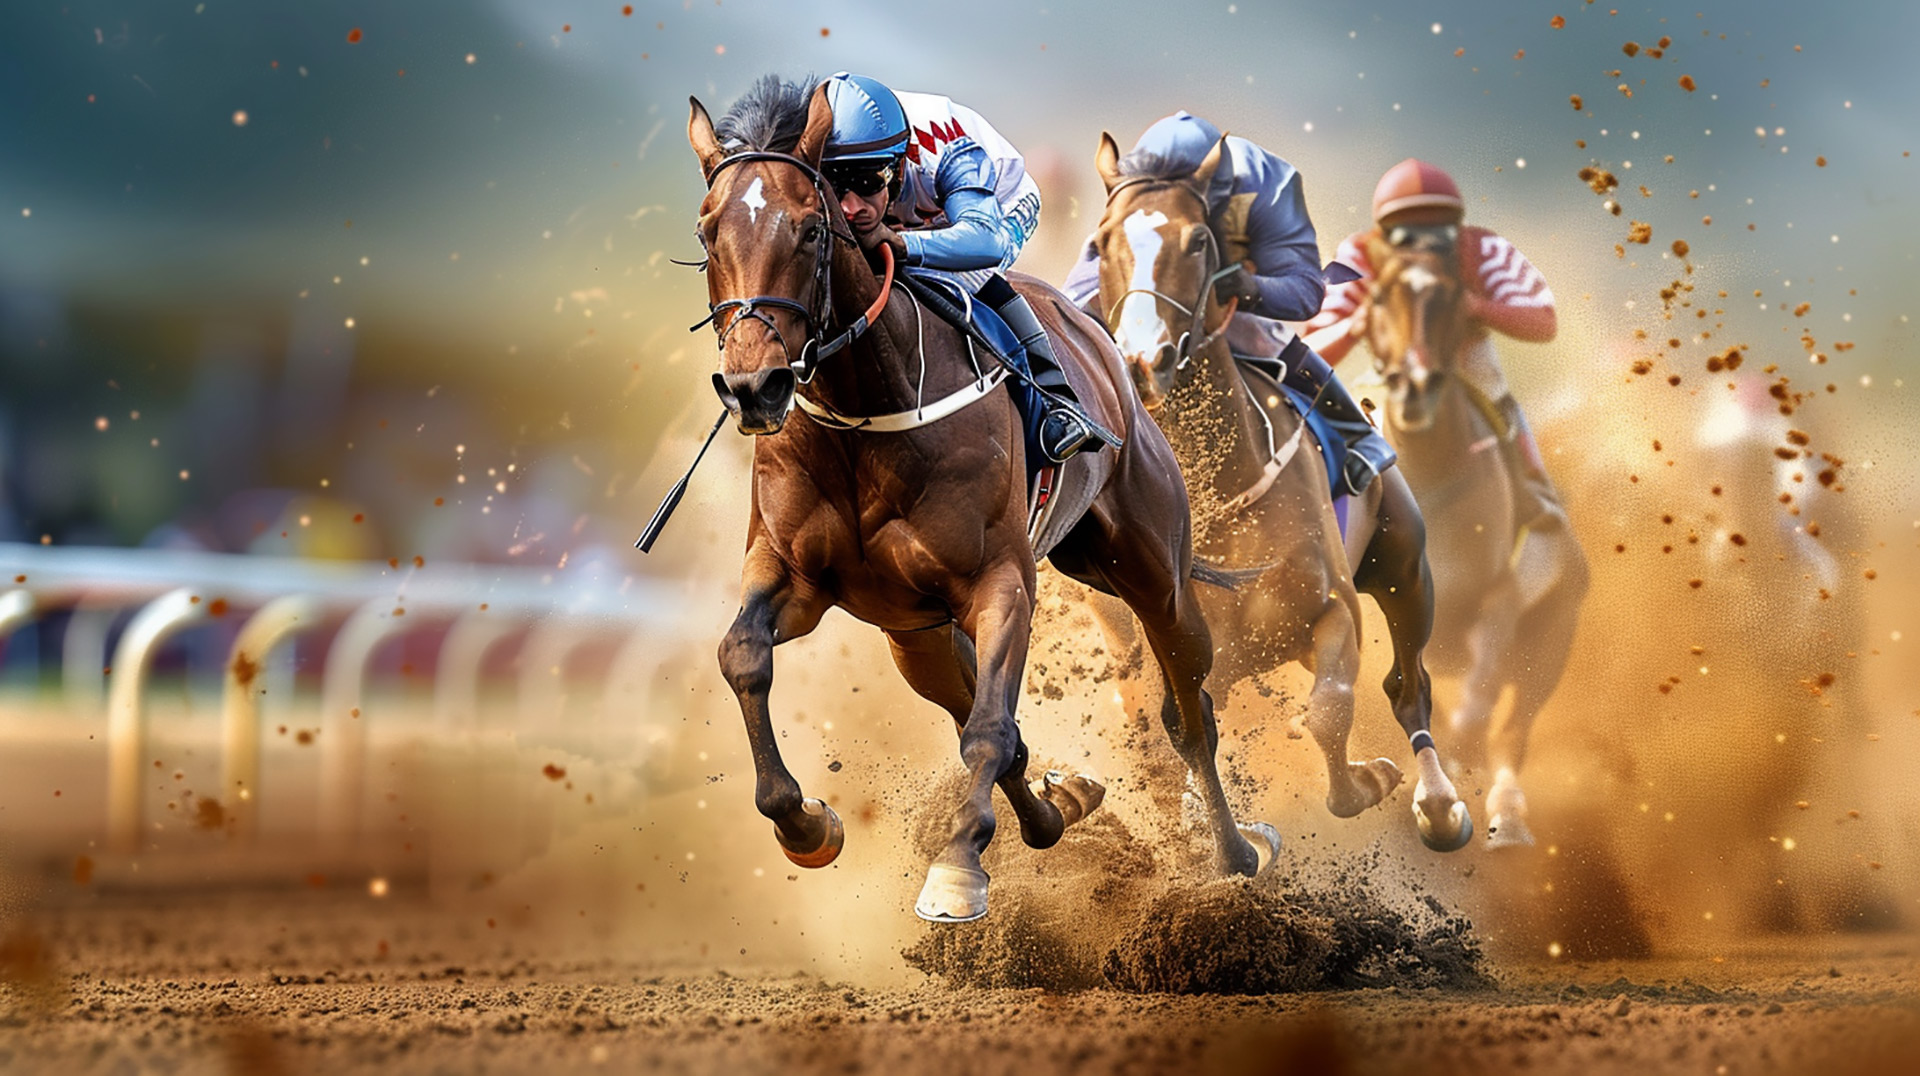 Dynamic Jockeys: AI Pop Art Horse Racing 4k Image